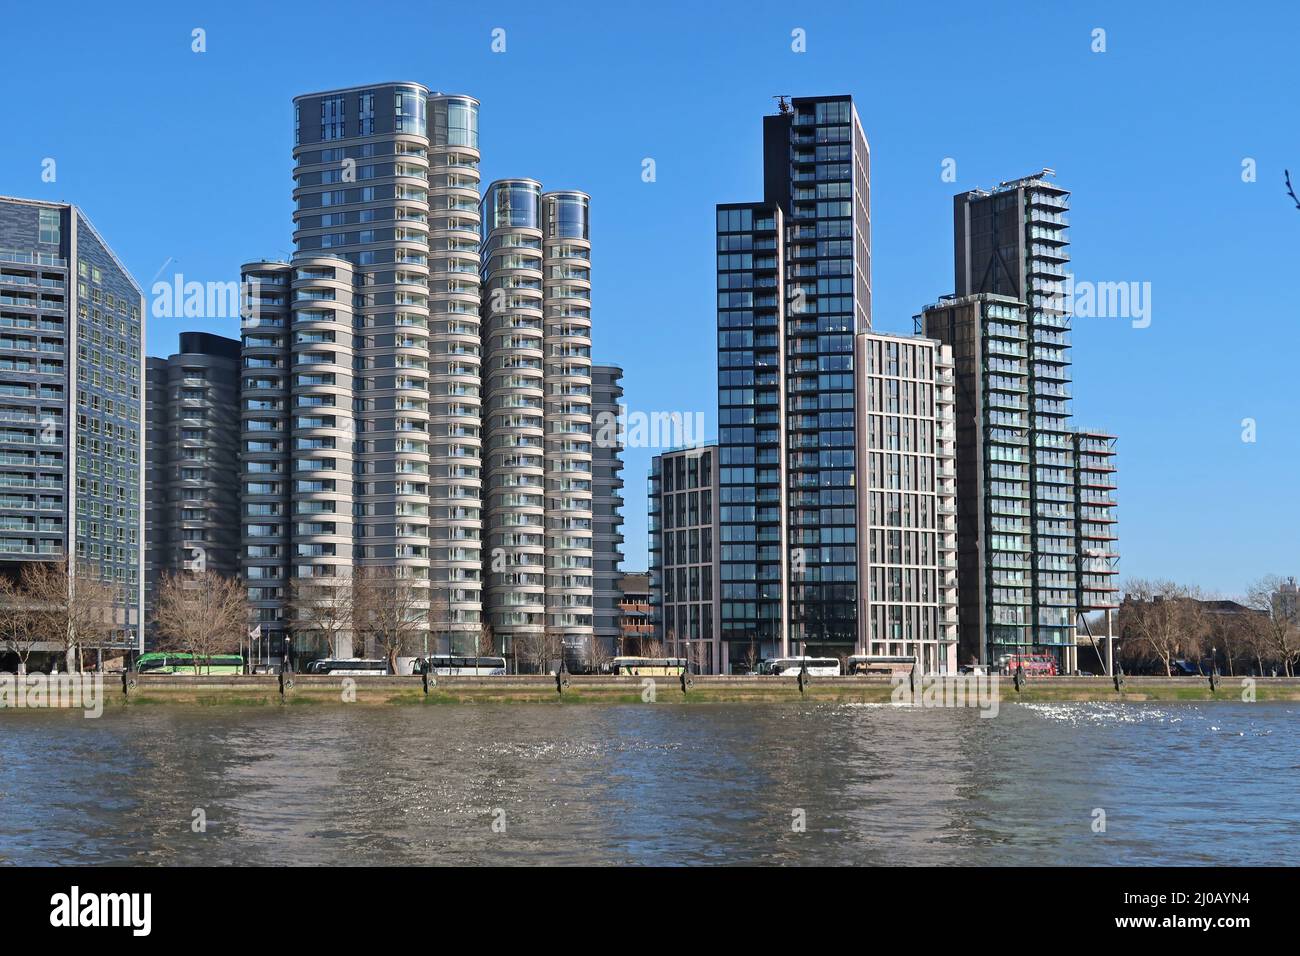 Nouveaux immeubles d'appartements sur le Albert Embankment de Londres. Comprend la corniche de Foster + Partners (à gauche) et les résidences Merano de Richard Rogers (à droite). Banque D'Images